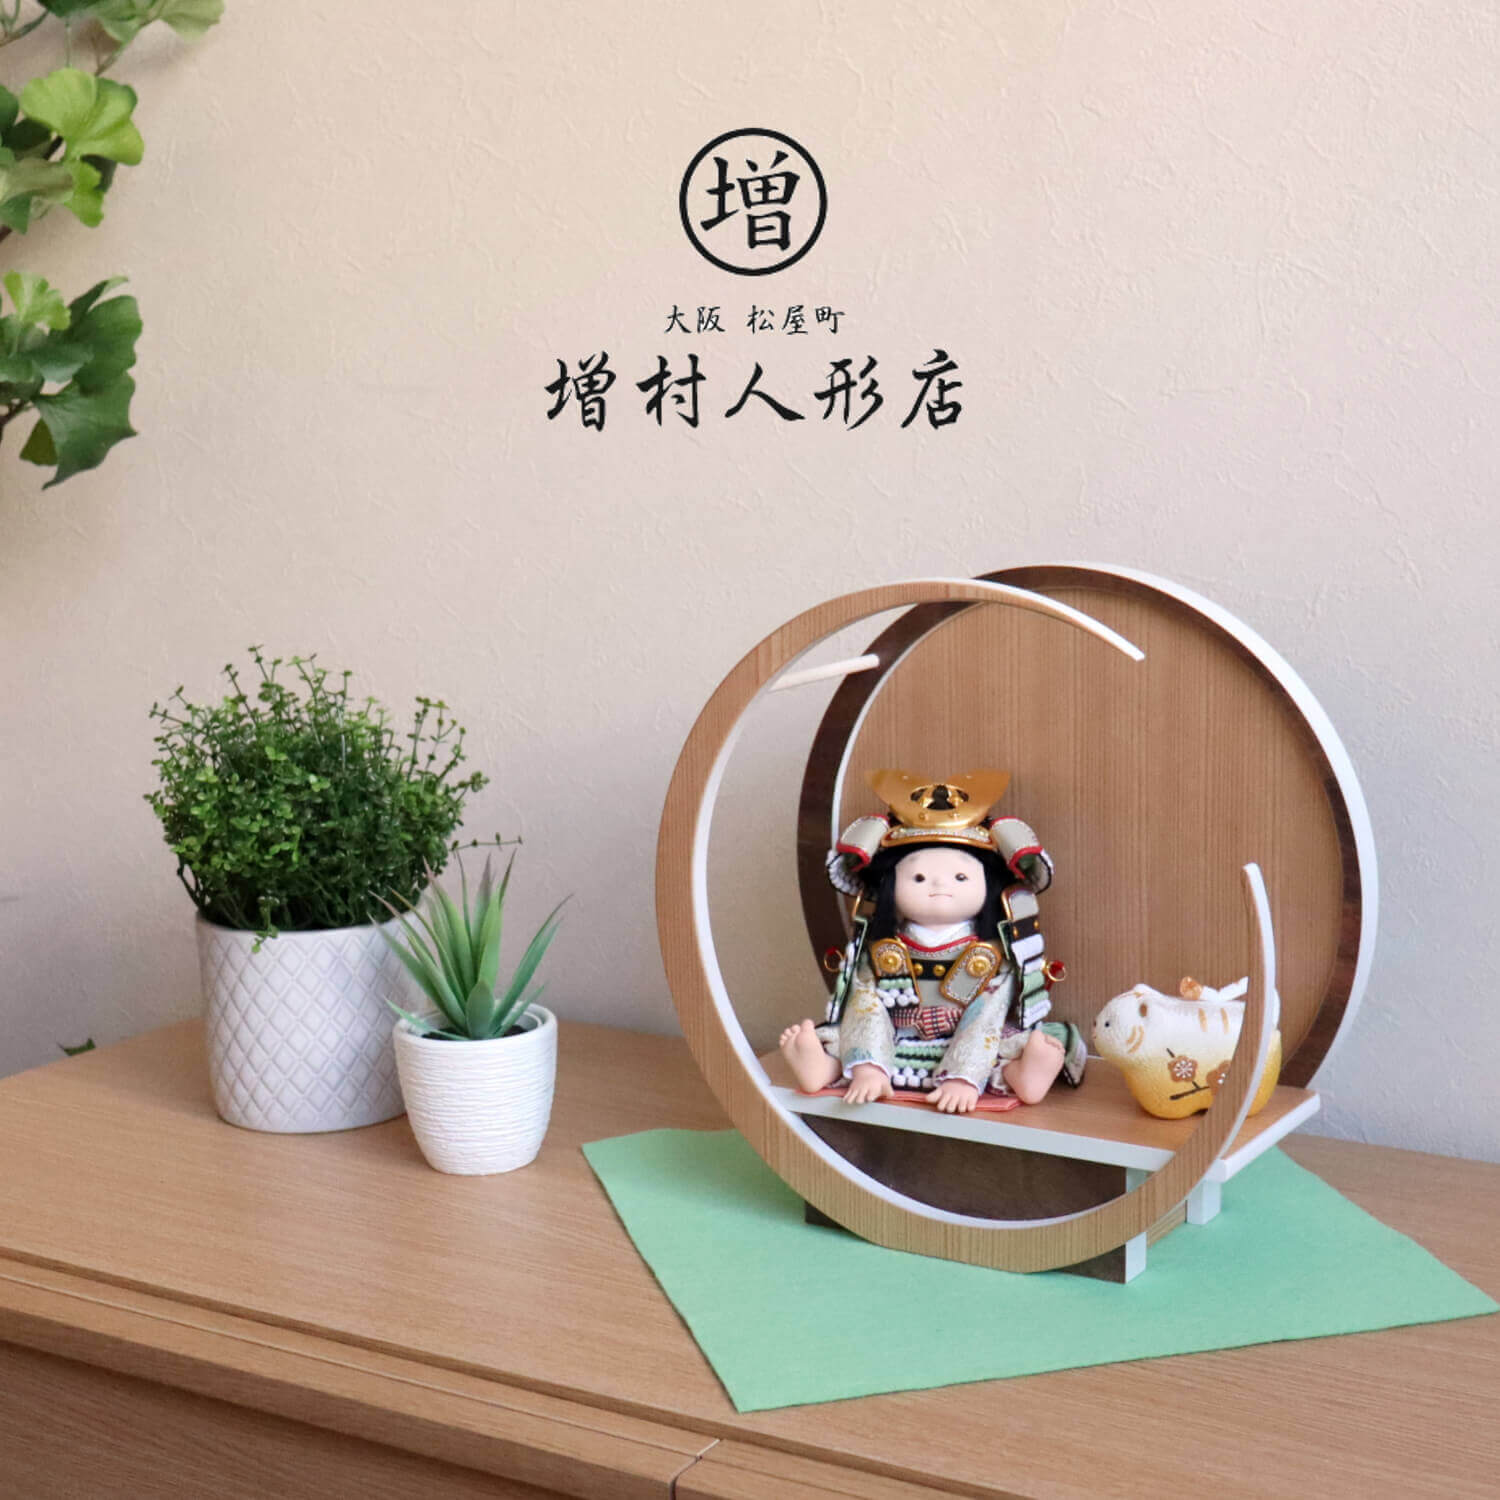 幸一光作 月-tsuki-(小)日本製円形ナチュラル杉・ウォールナット飾り 鎧着座り大将「碧」正絹淡萌葱糸縅 正絹西陣織…